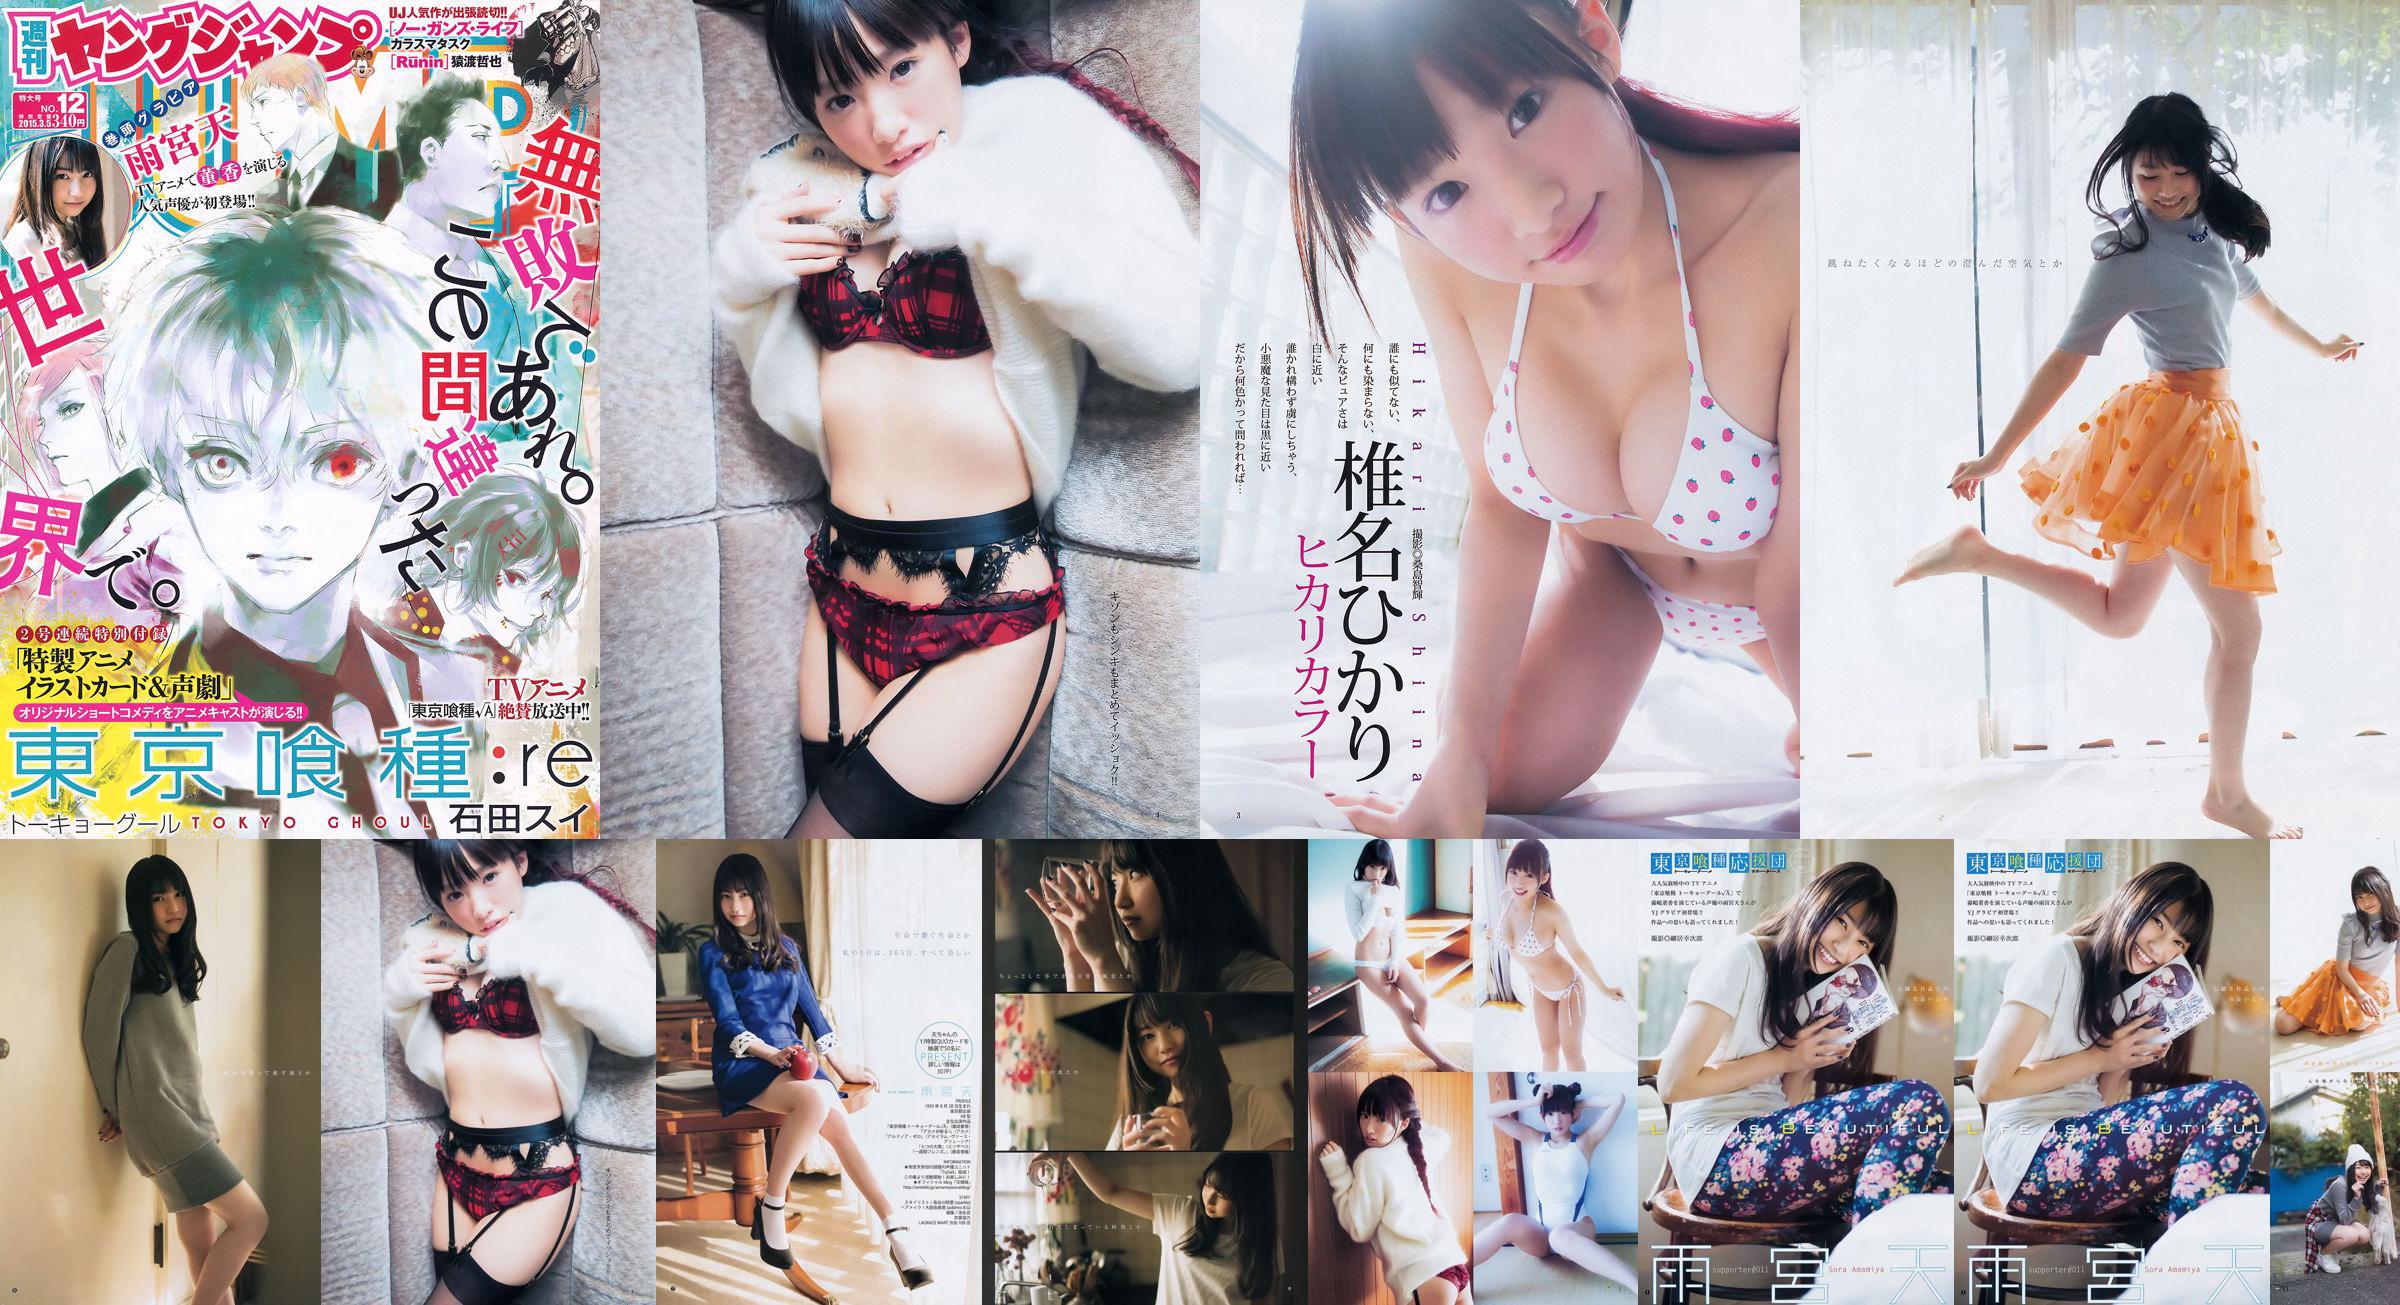 Amamiya Tian Shiina ひかり [Weekly Young Jump] 2015 No.12 Photo Magazine No.92139d Pagina 4